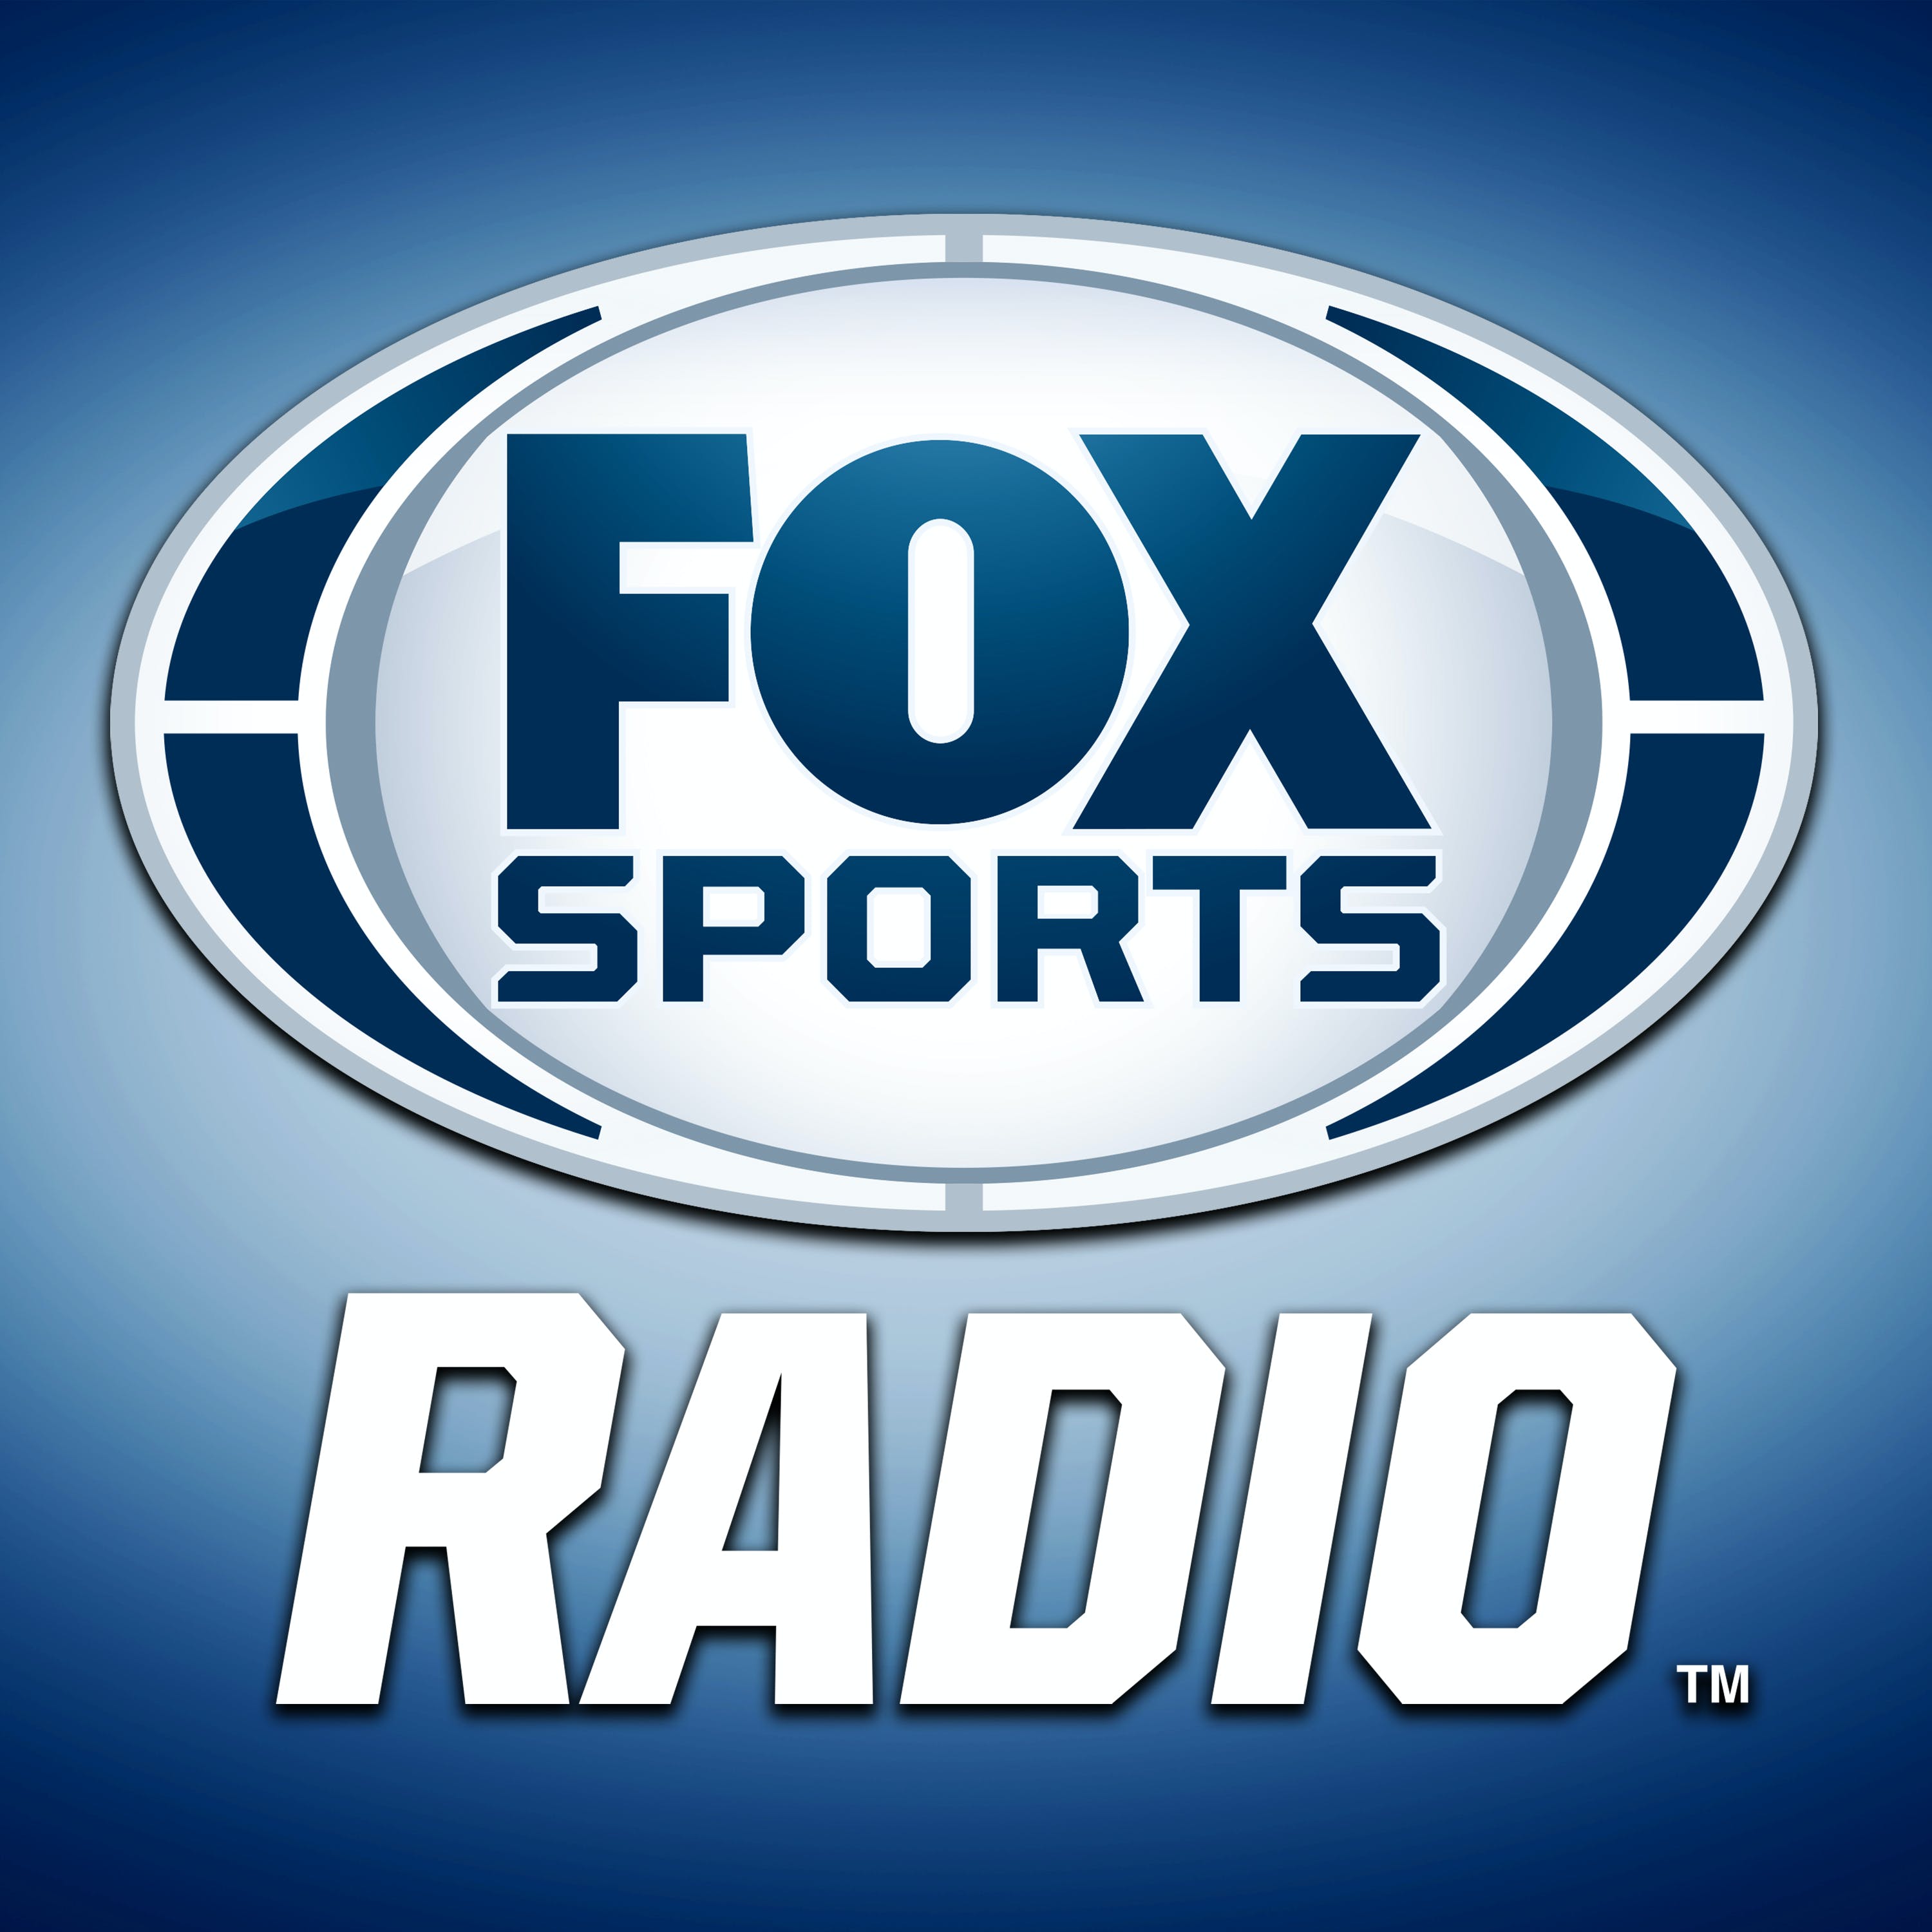 06/05/2021 - FOX Sports Saturday with Steve Hartman and Geoff Schwartz